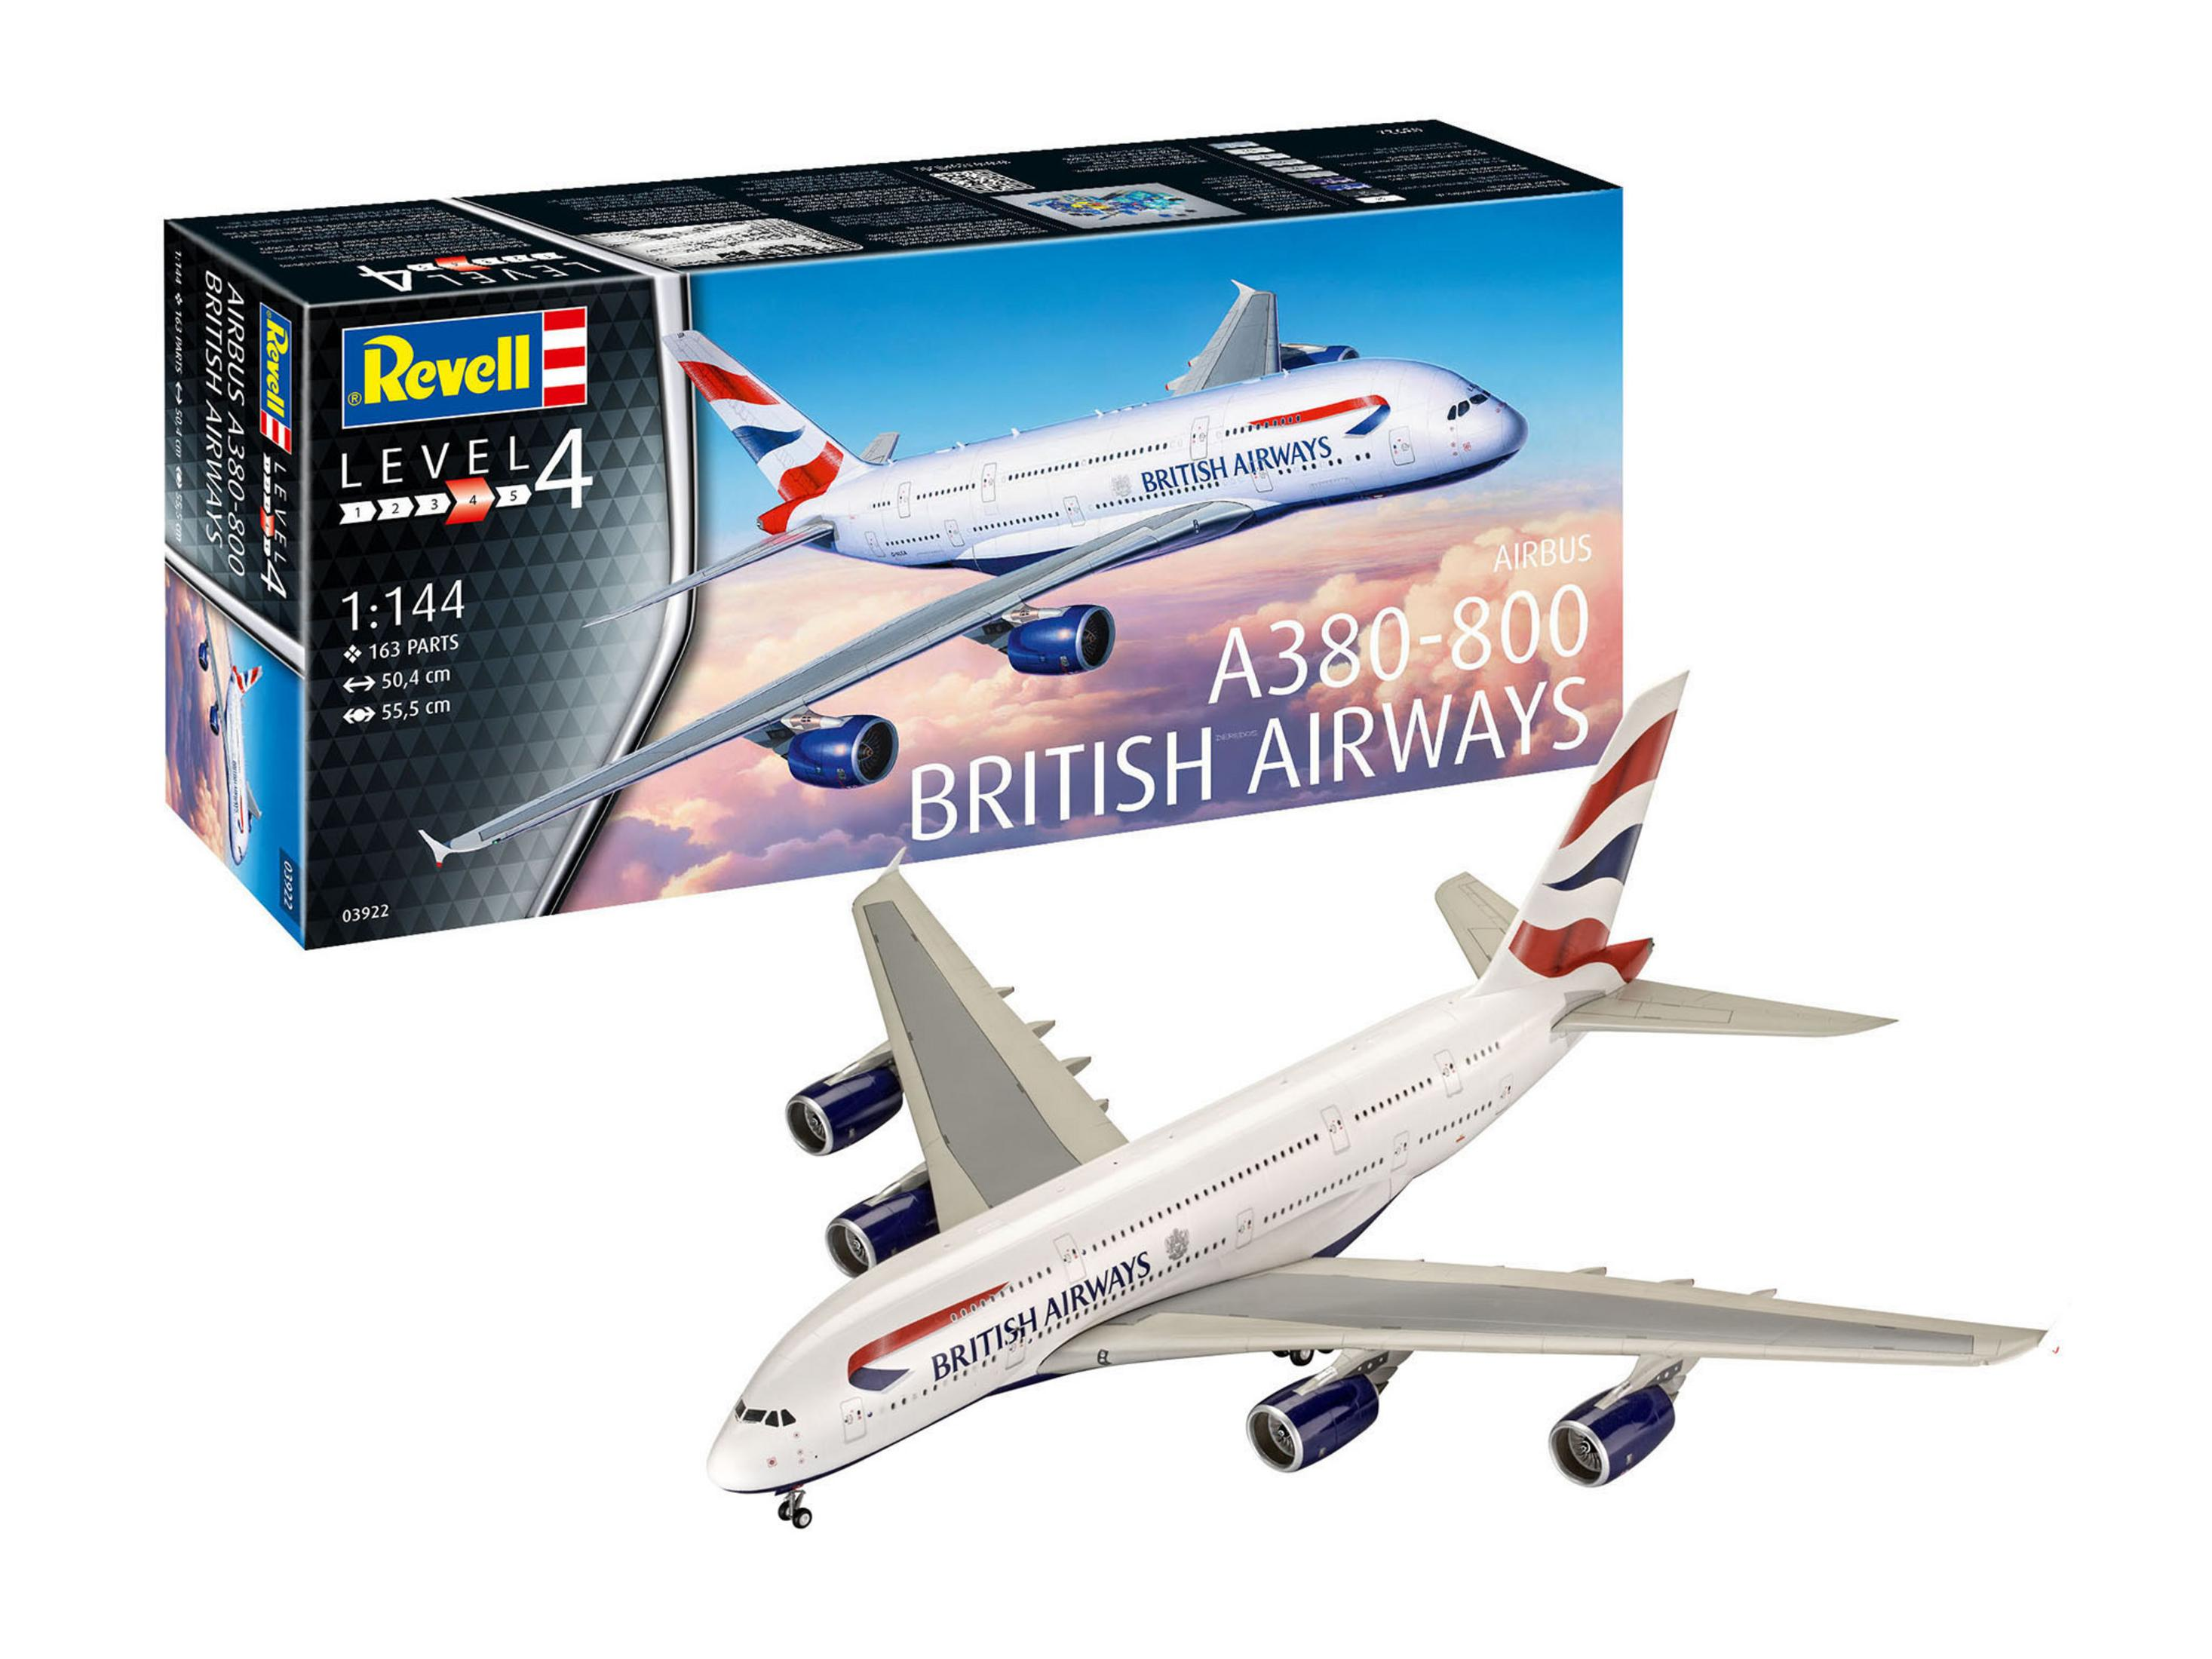 A380-800 REVELL Modell (NUR BRITISH 03922 AIRWAYS ONLINE)